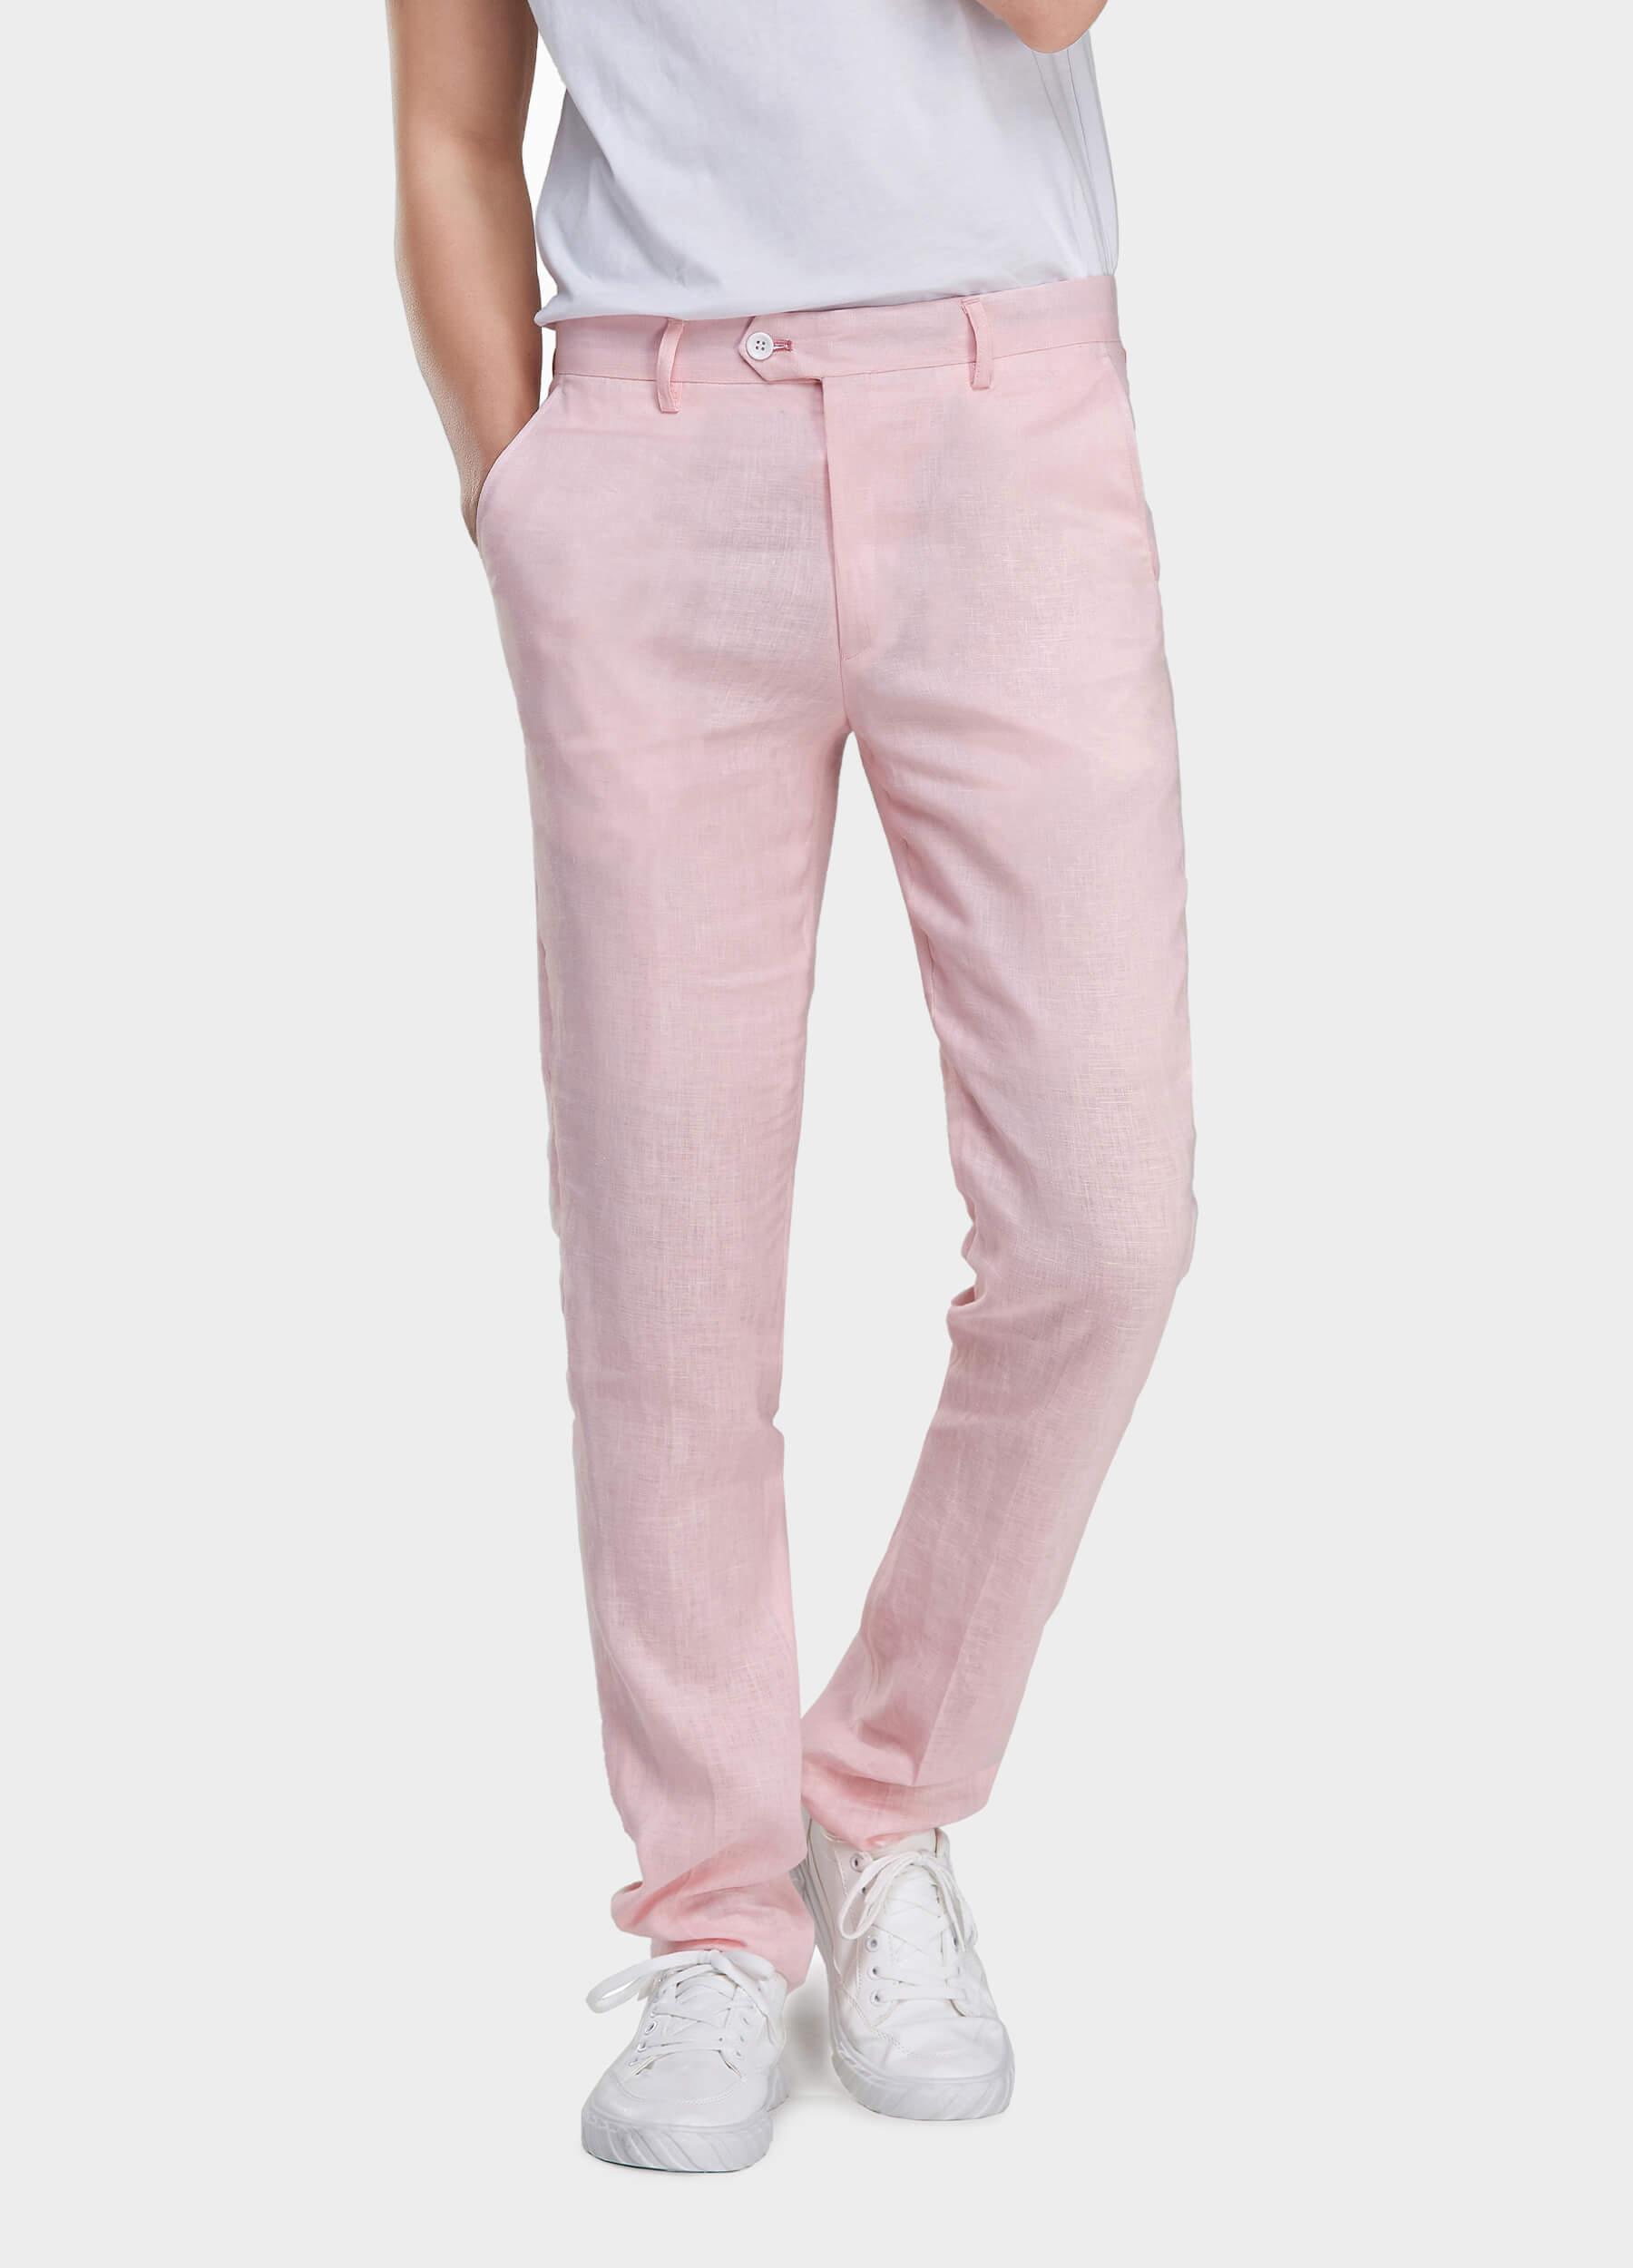 Pink men's linen pants